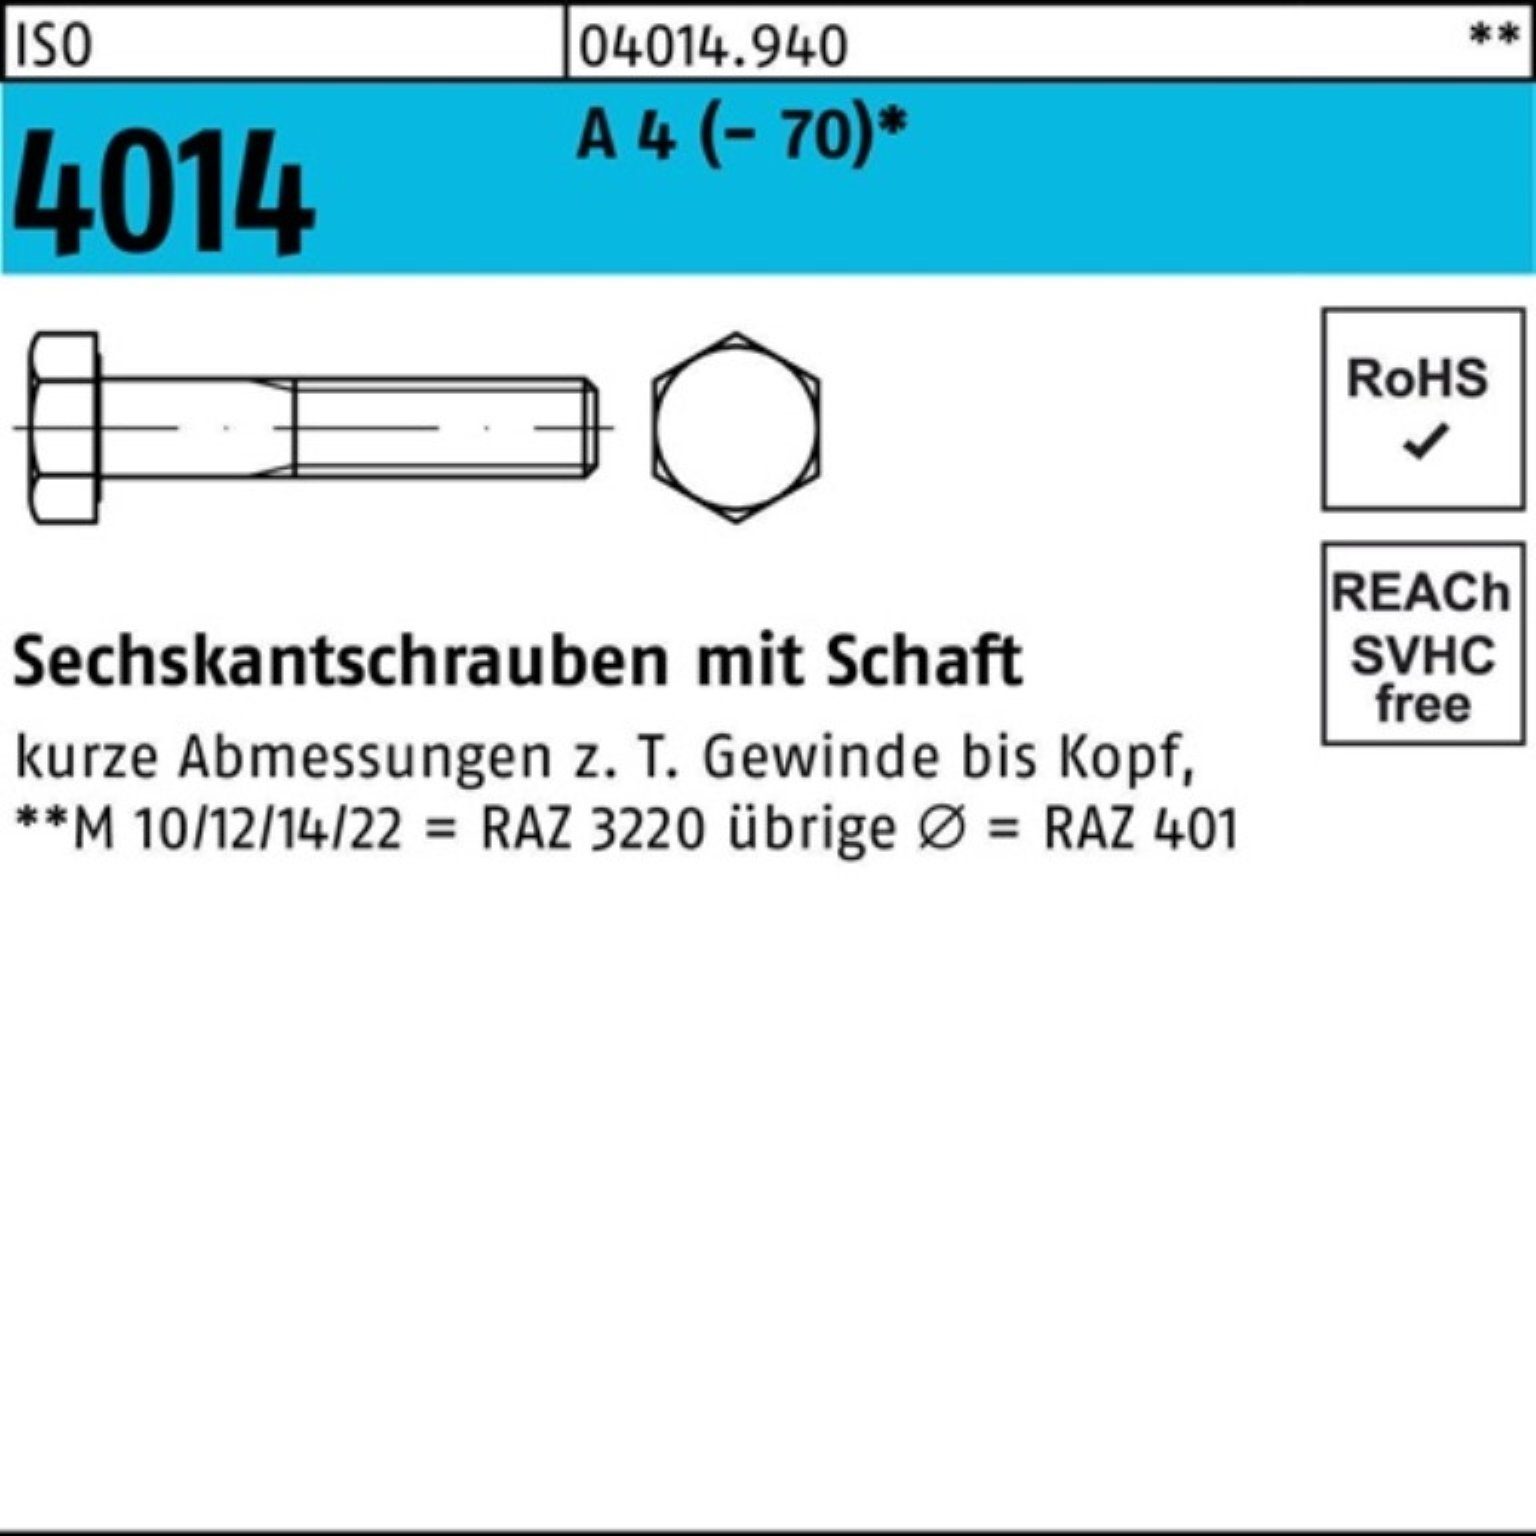 Bufab Sechskantschraube 100er Pack 4014 4 A St ISO Sechskantschraube M10x 140 1 Schaft (70)